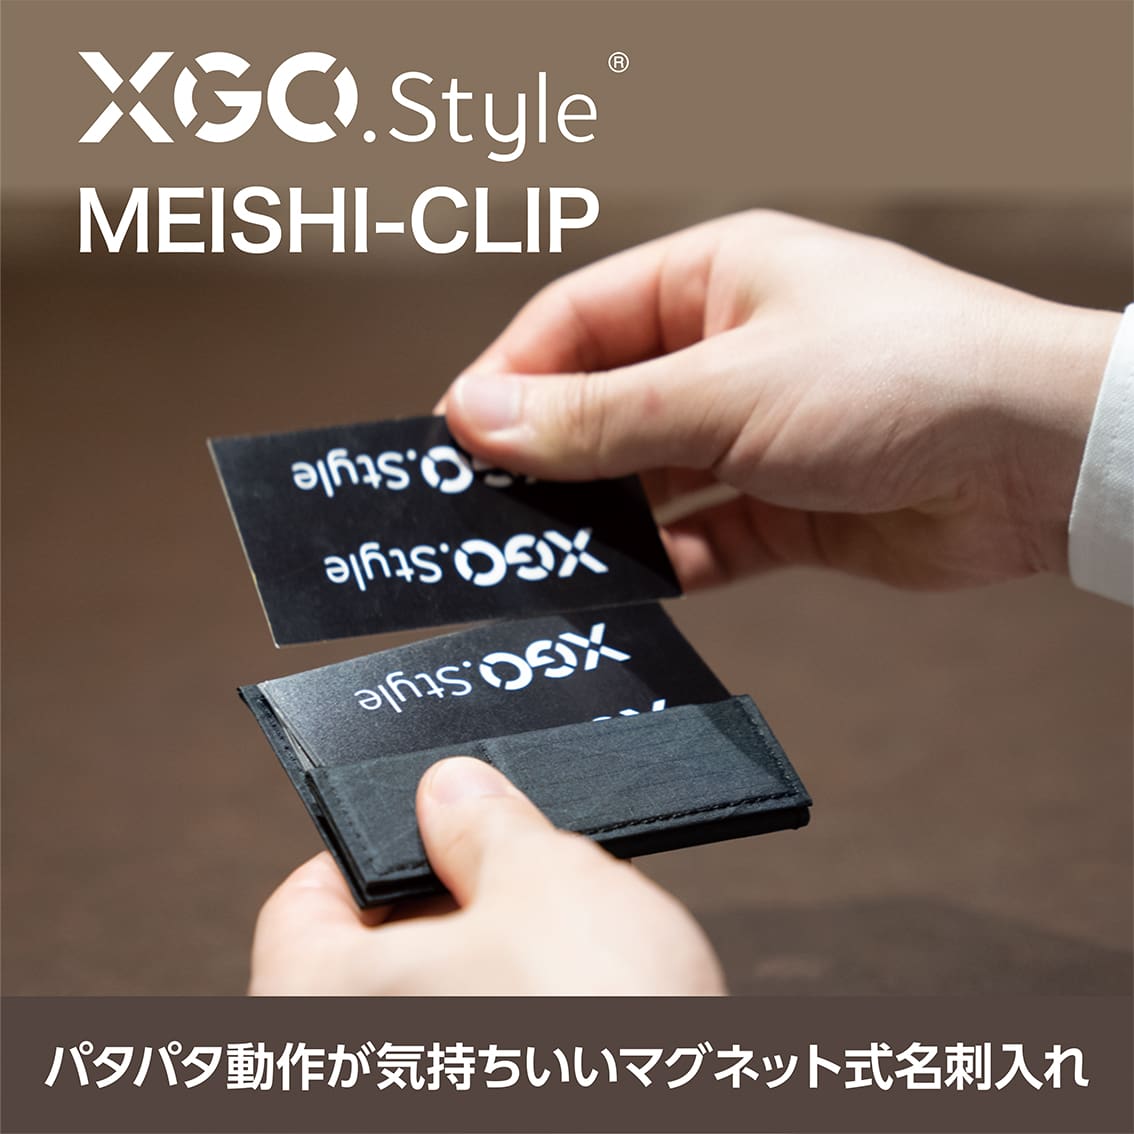 XGO.style 名刺入れ  MagSafe 対応 スリム マグネット メンズ レディース おしゃれ シンプル 薄型 ビジネス